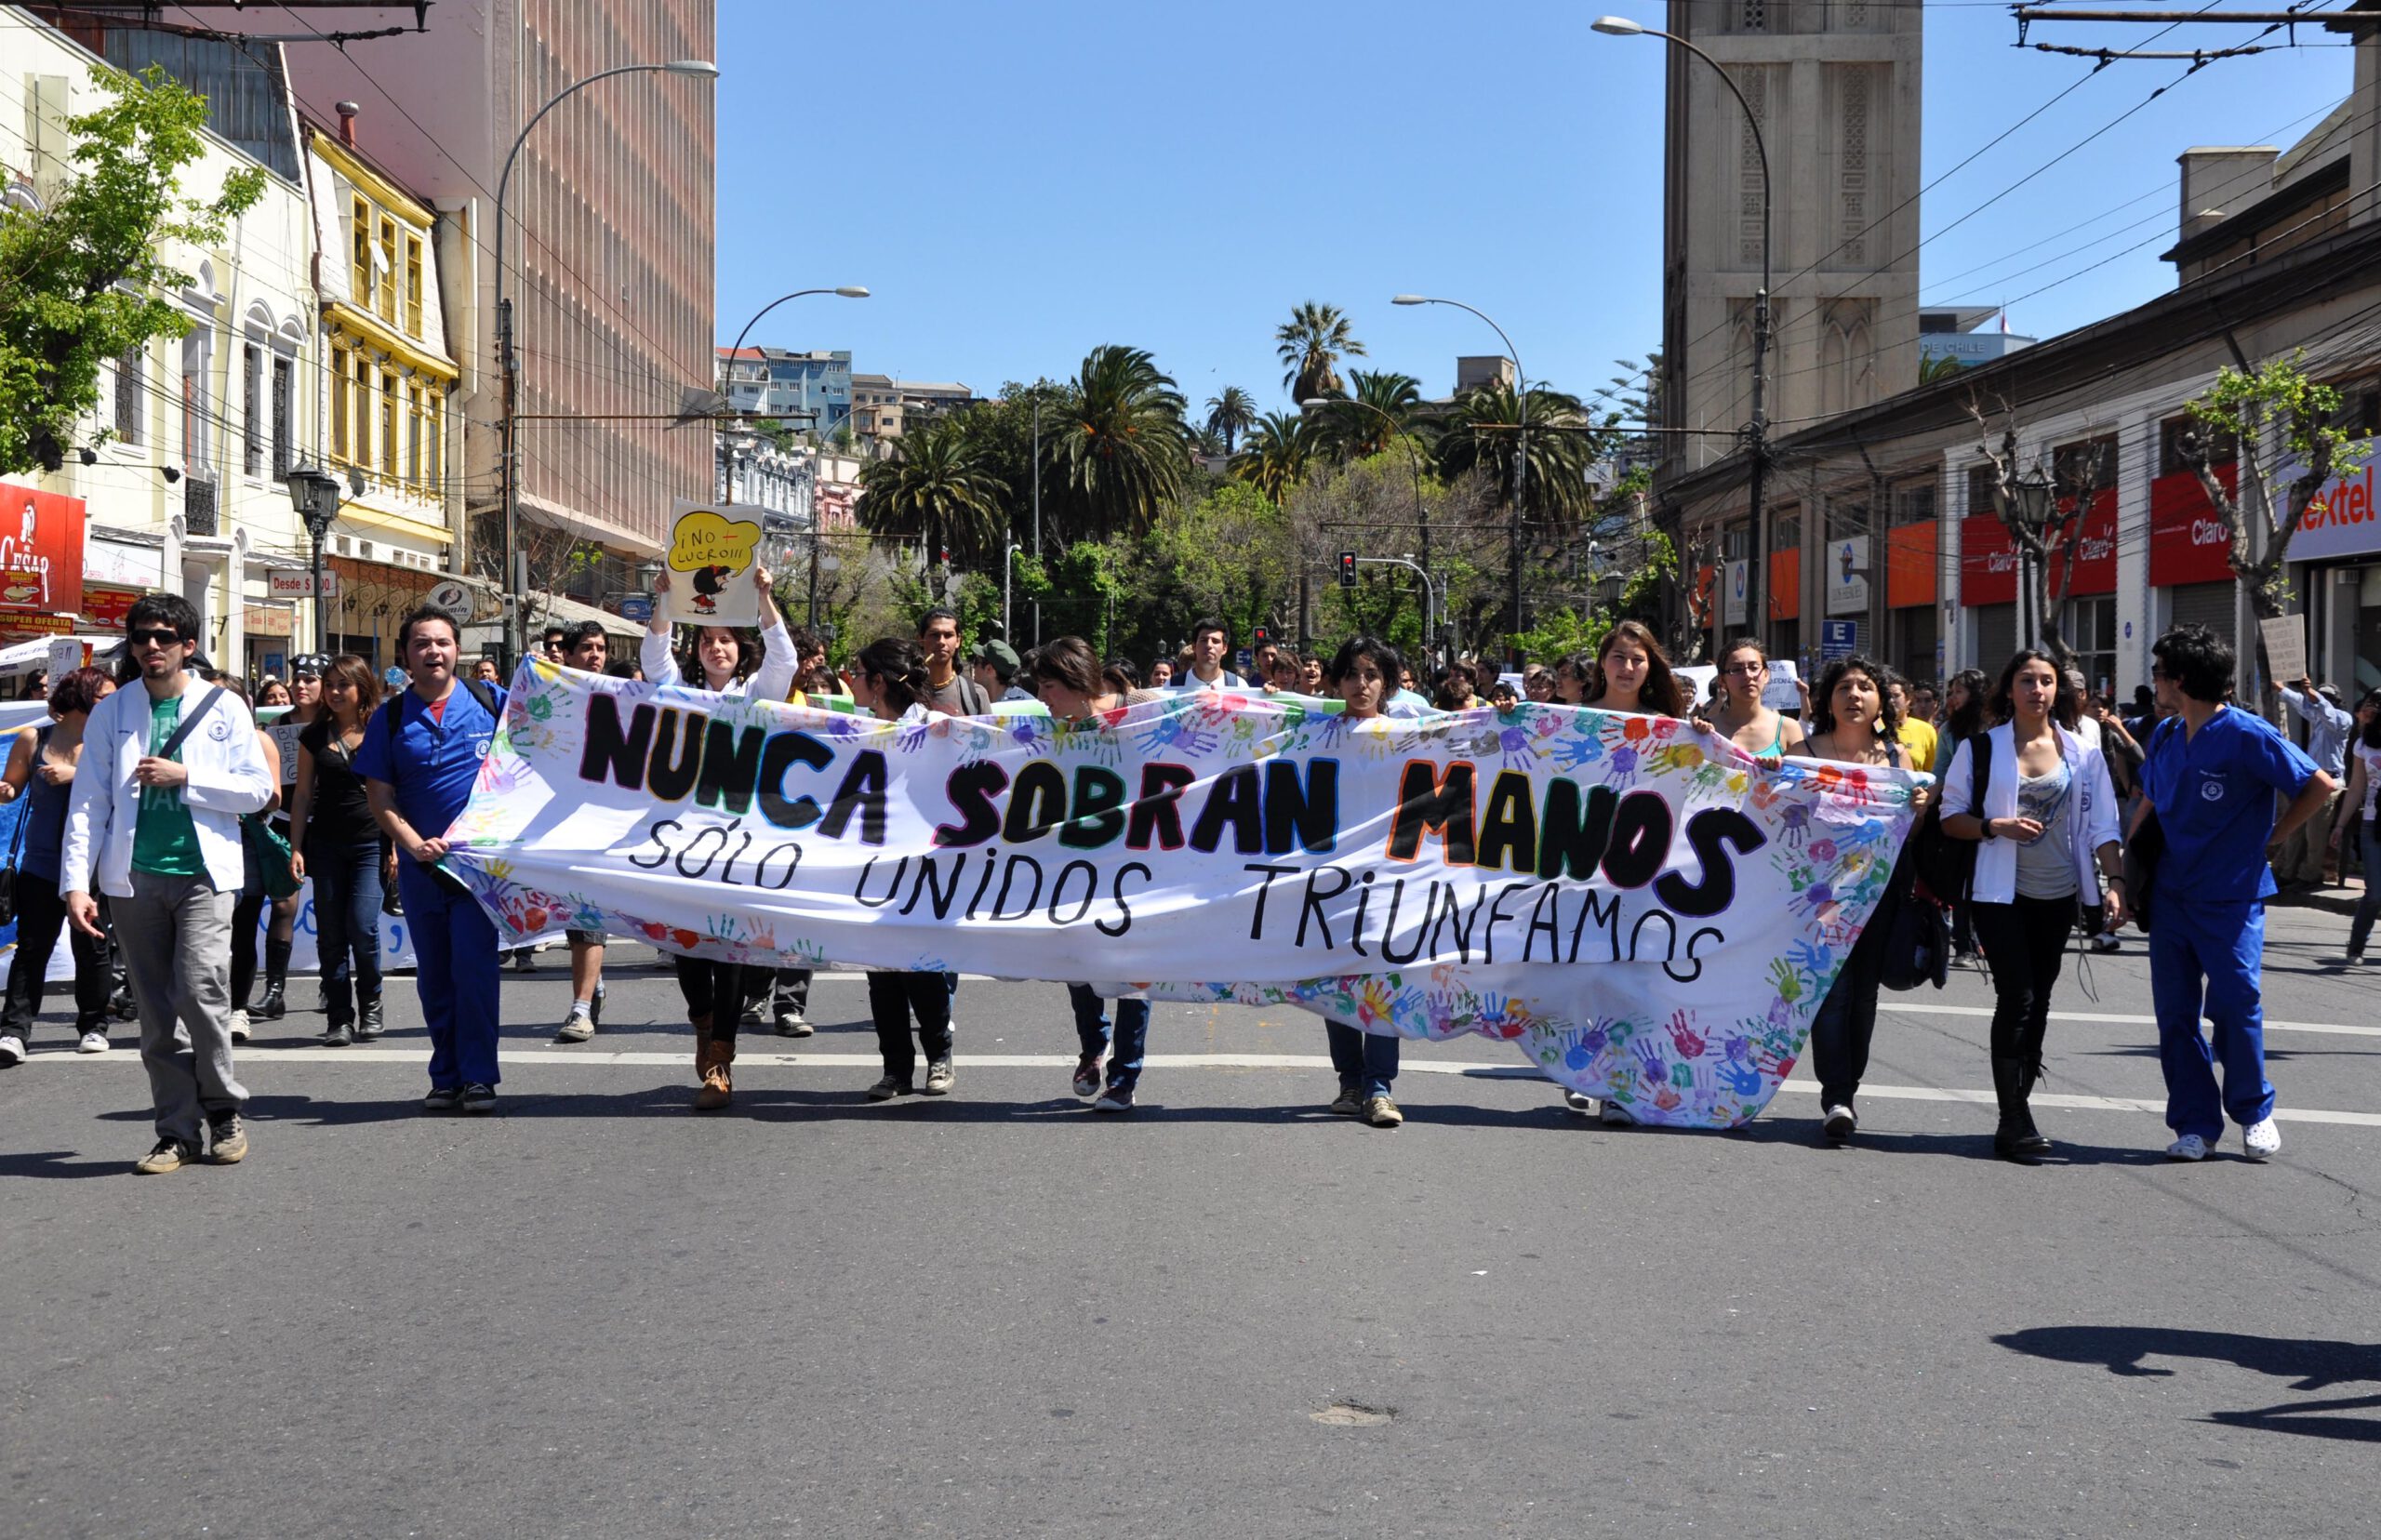 #5 Trotz alledem: Gewerkschaften und Soziale Bewegungen in Lateinamerika